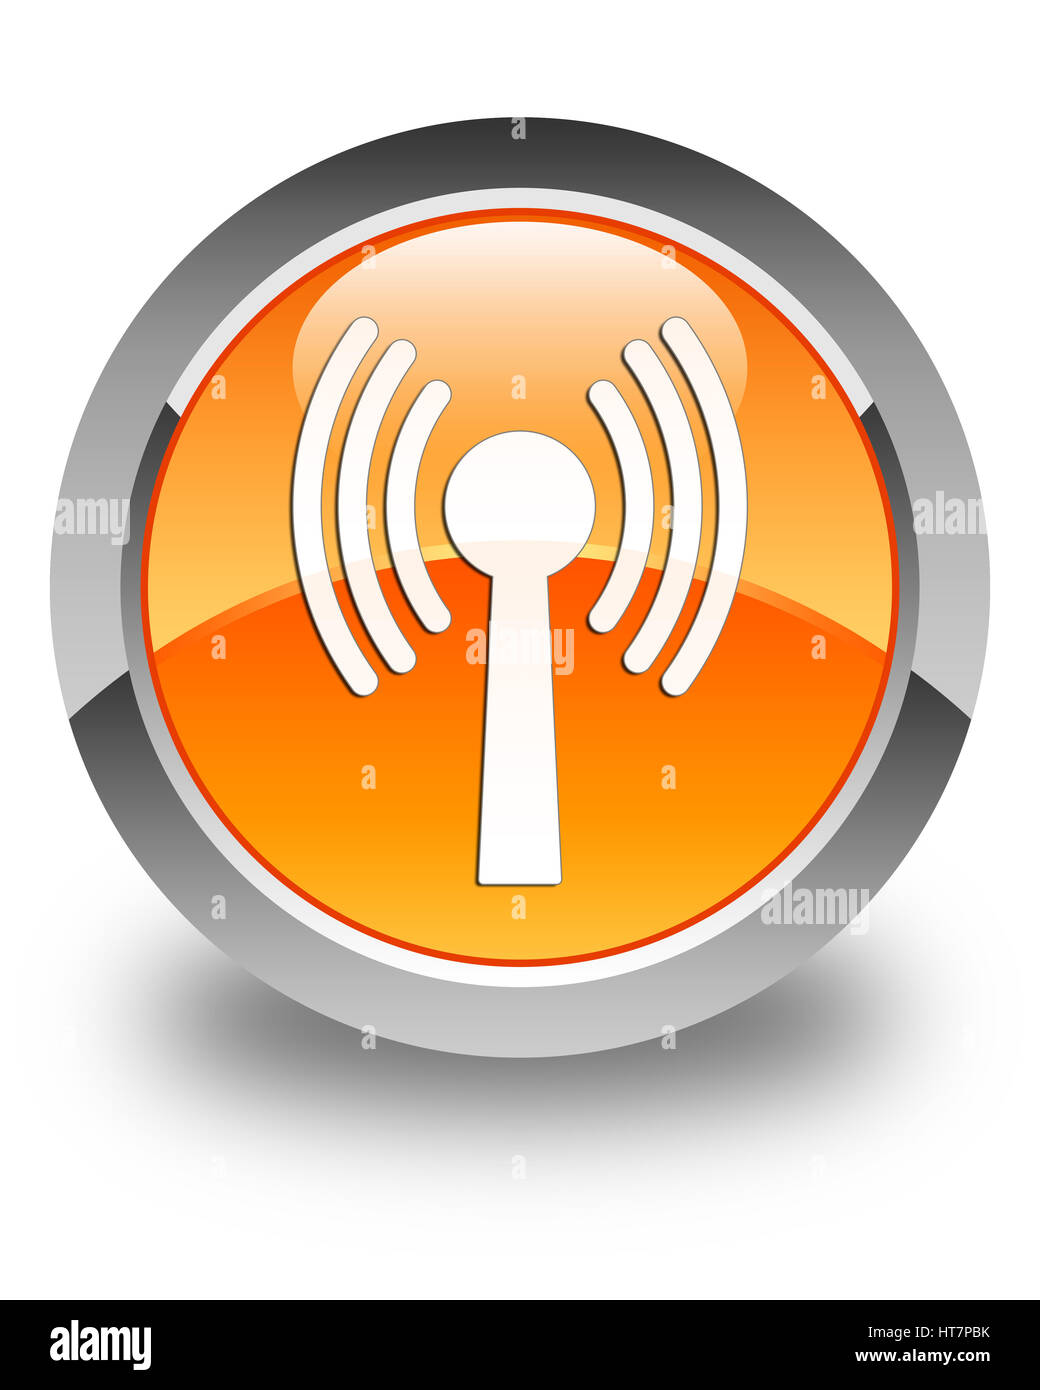 L'icône de réseau local sans fil isolé sur bouton rond orange brillant abstract illustration Banque D'Images